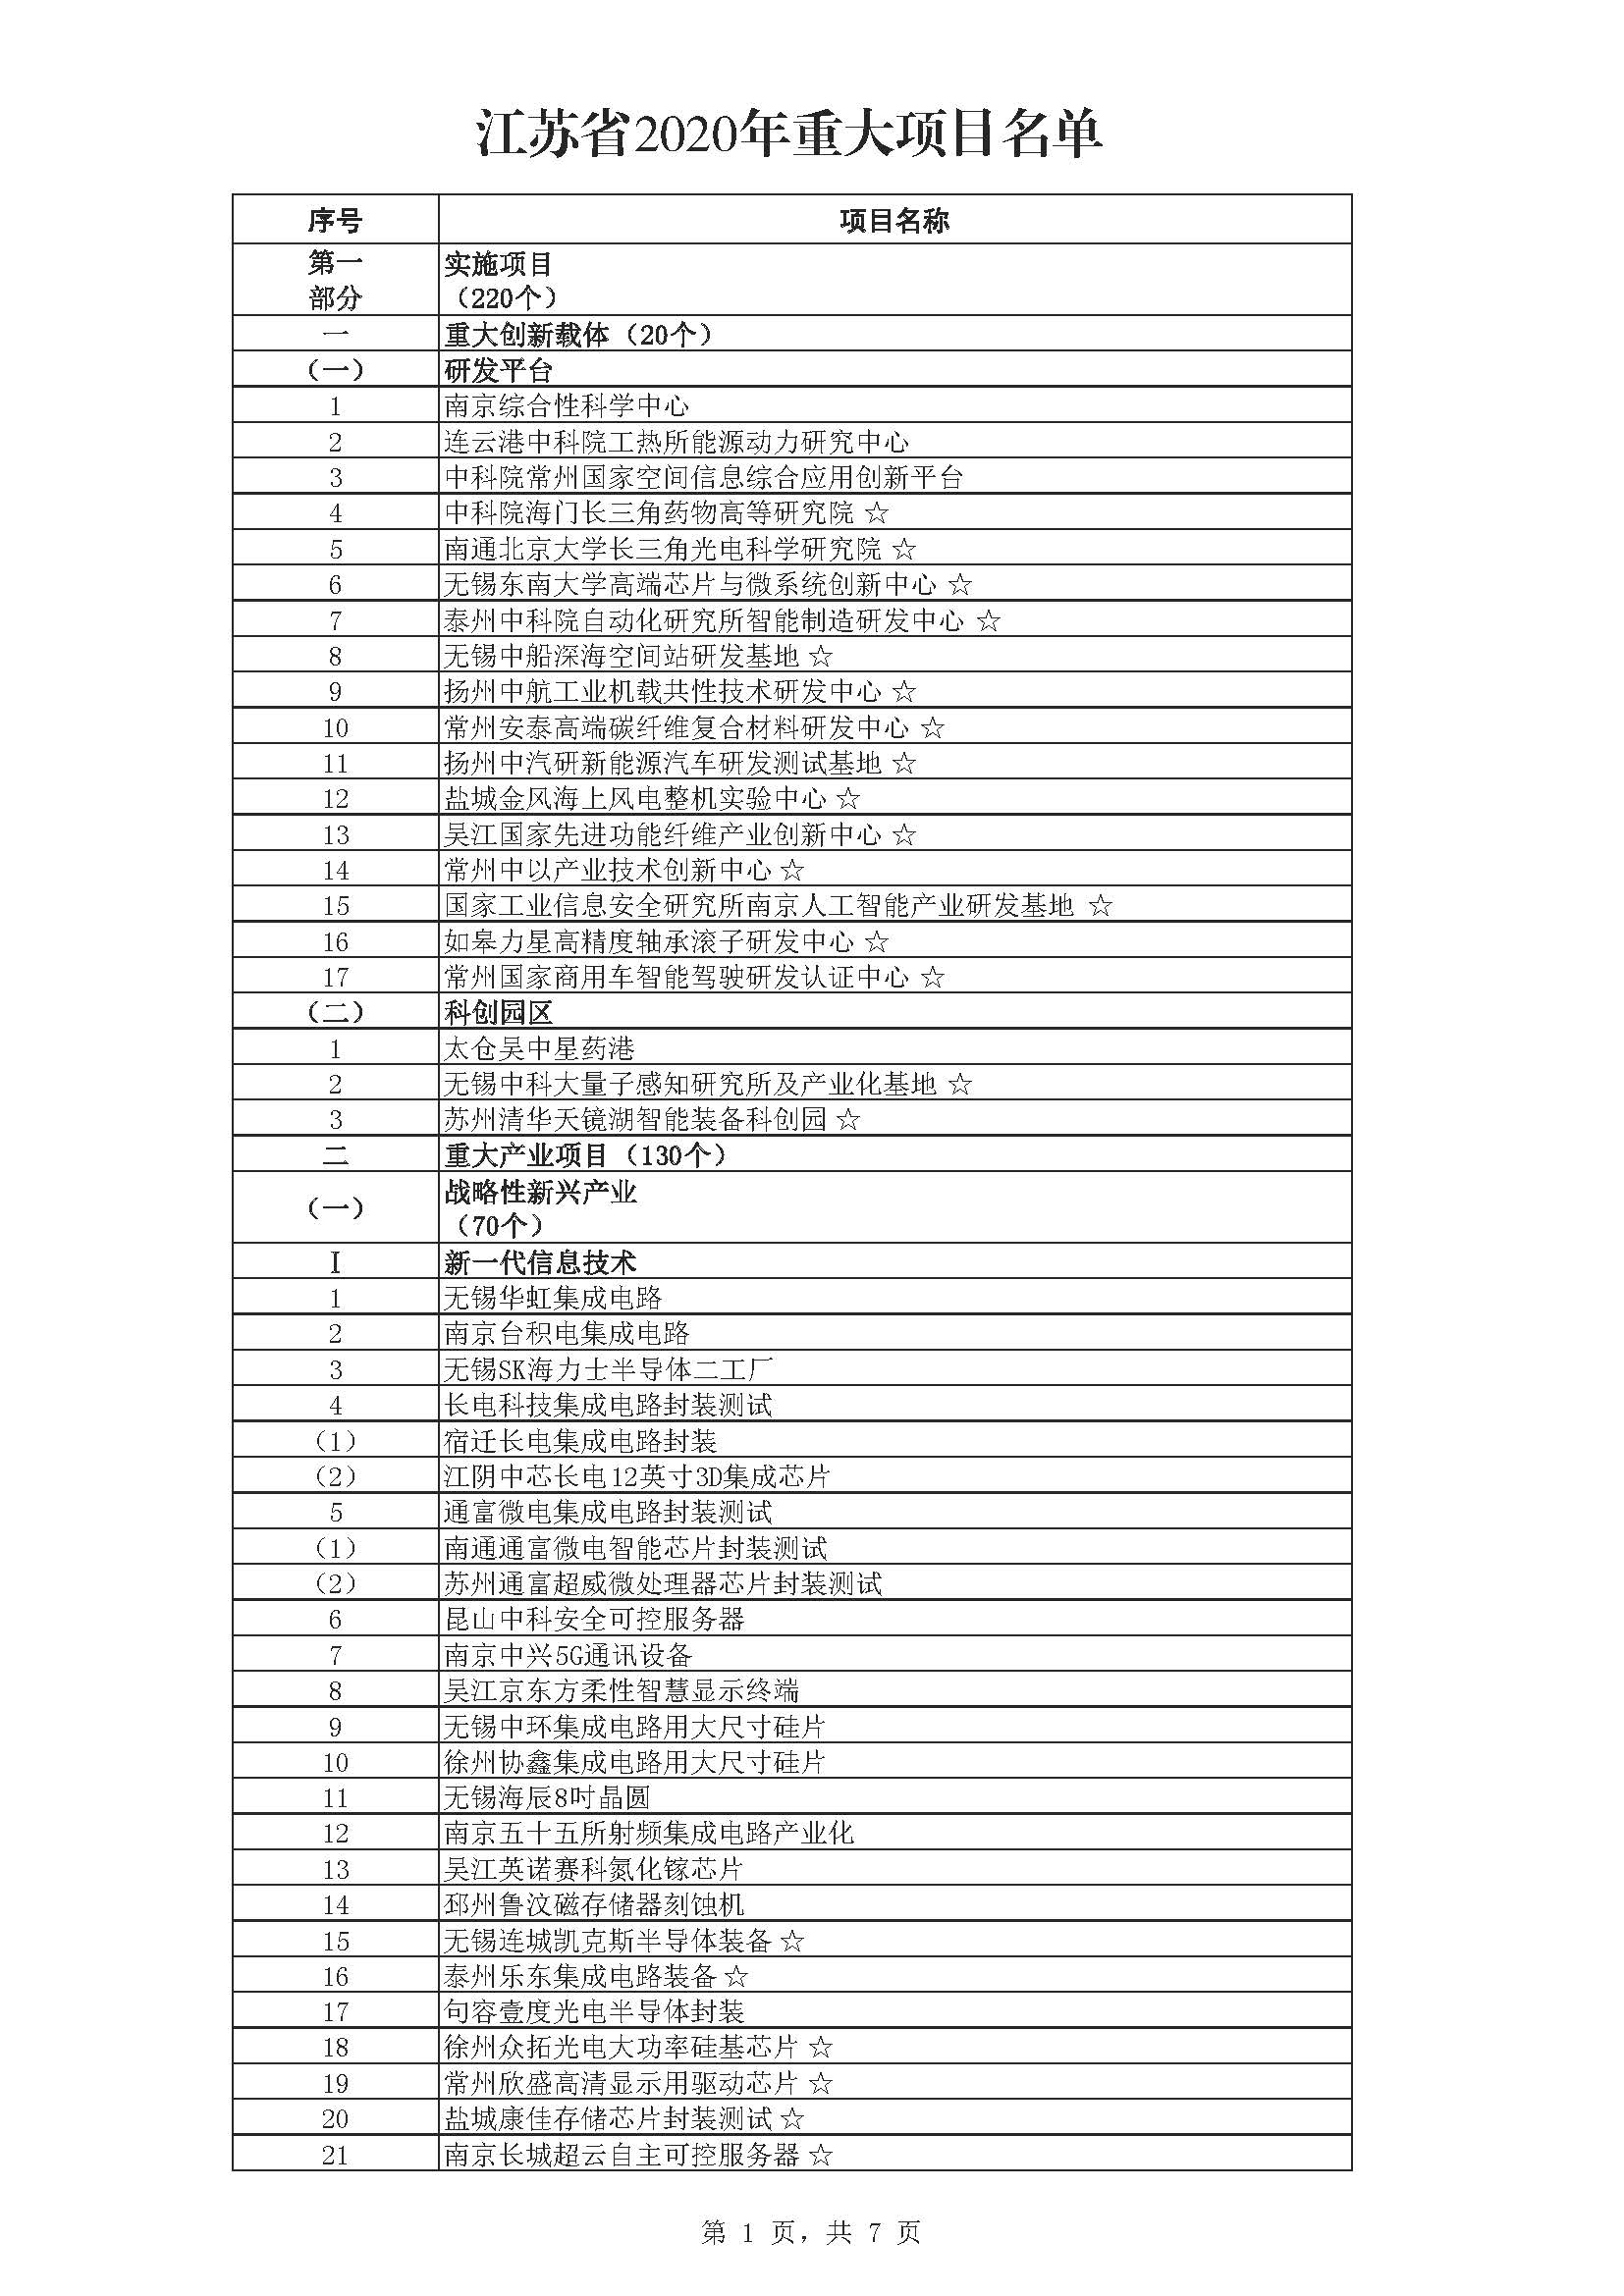 江苏省2020年重大项目名单